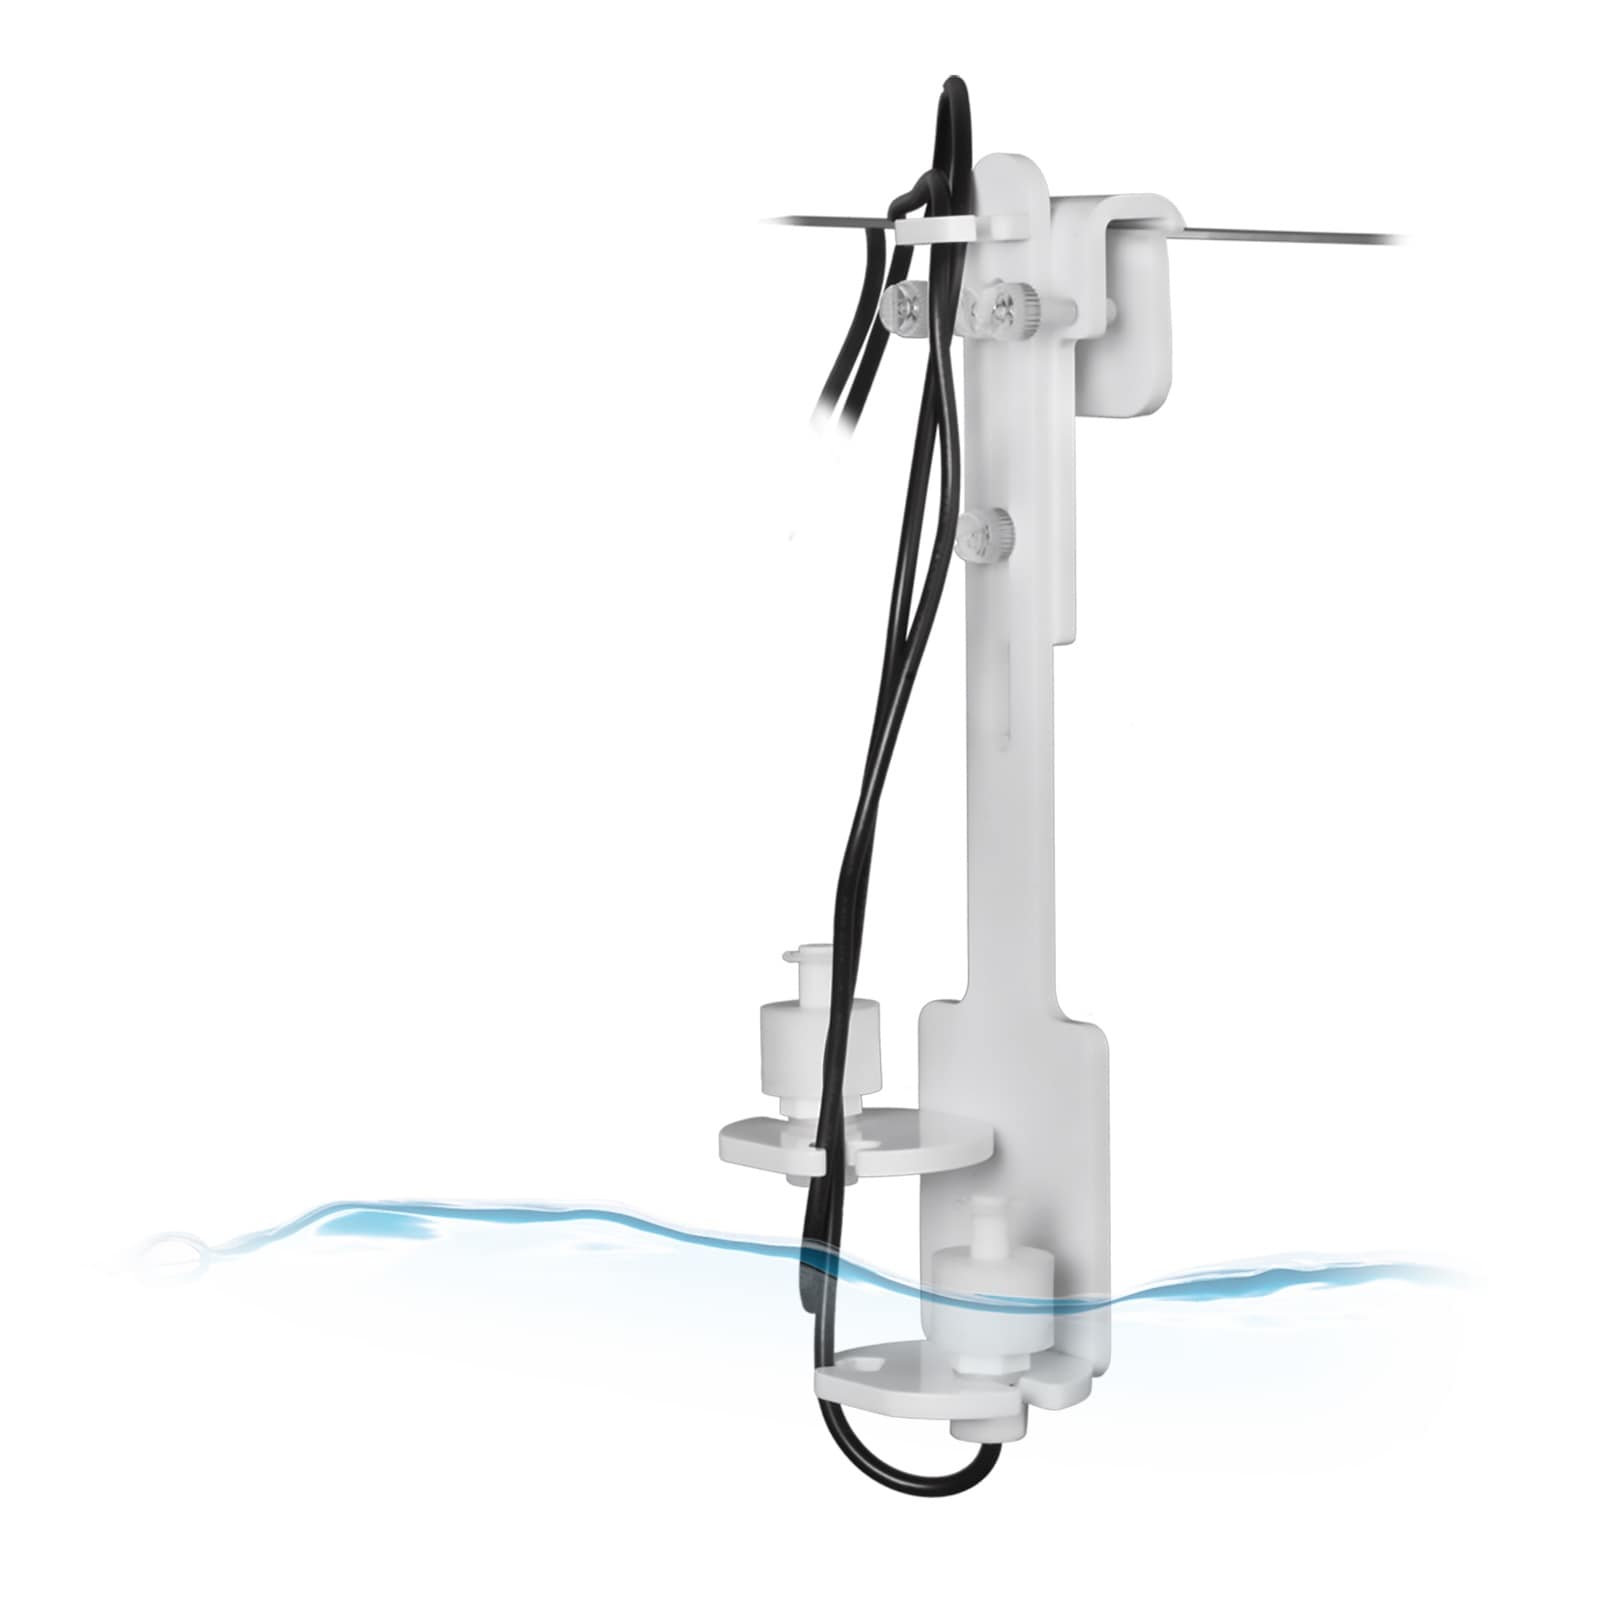 aqua-medic-refill-system-2-0-osmolateur-complet-pour-compensation-automatique-de-l-eau-evaporee-6-min